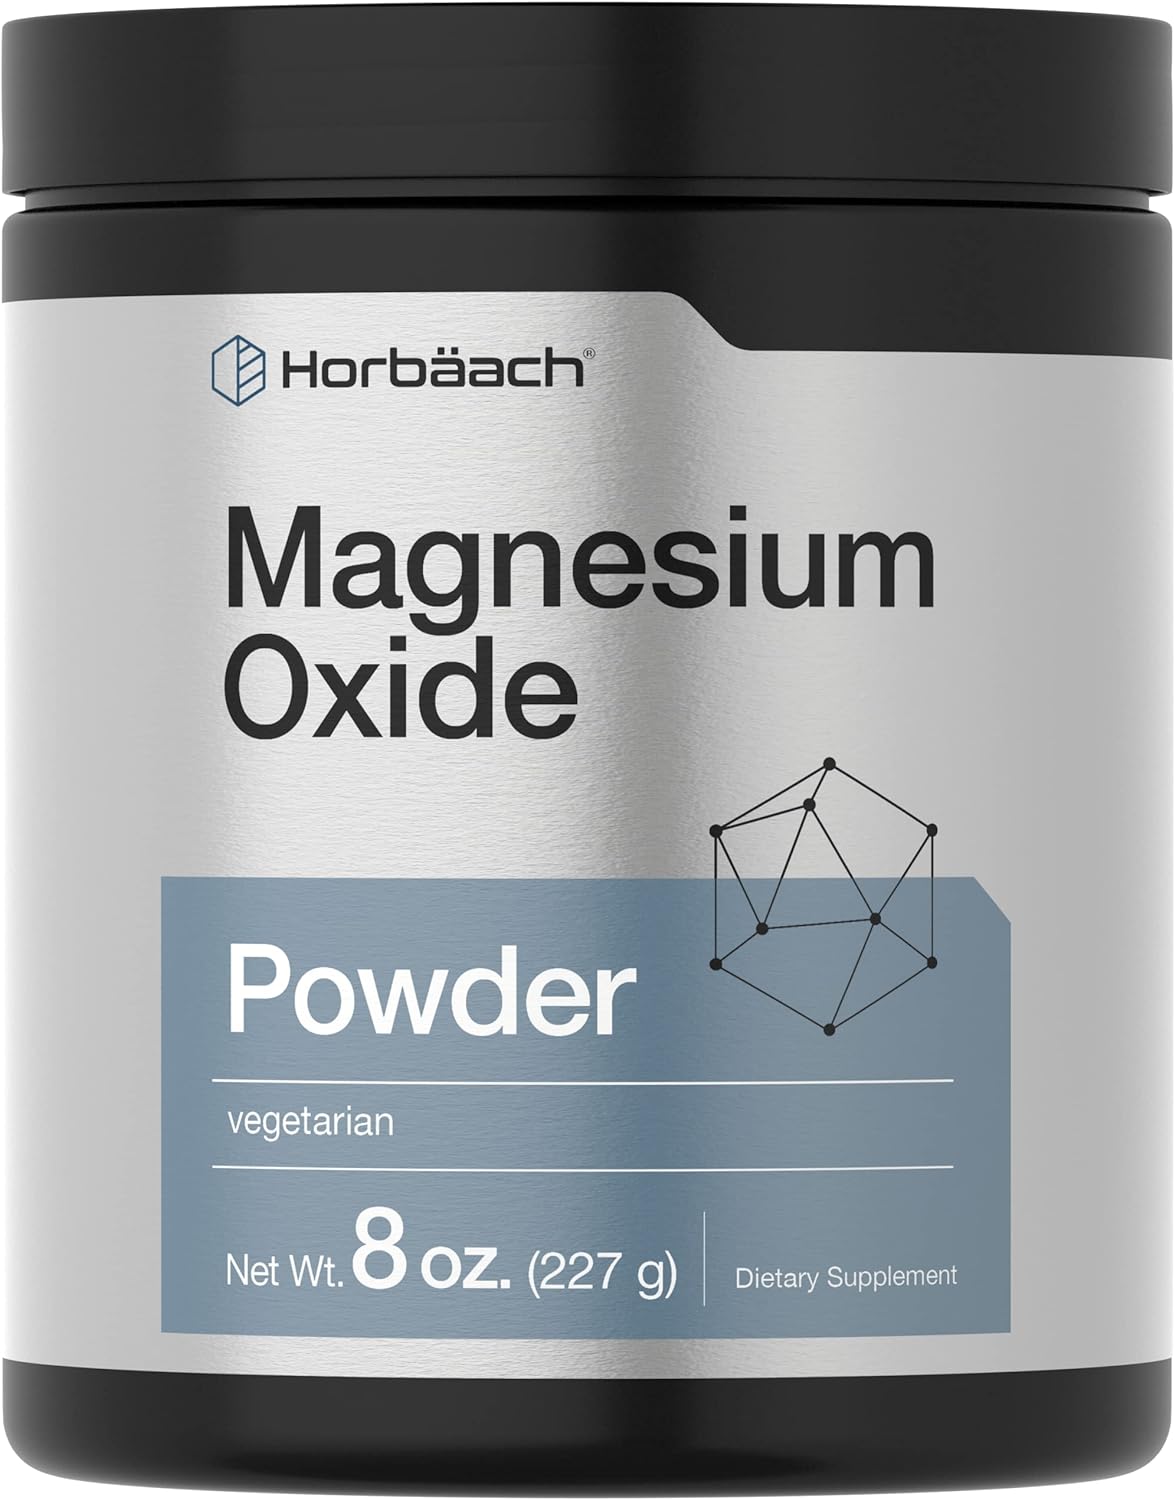 Horbach Magnesium Oxide Powder | 400mg | 8 Ounces (227 g) | Vegetarian, Non-GMO, and Gluten Free Supplement